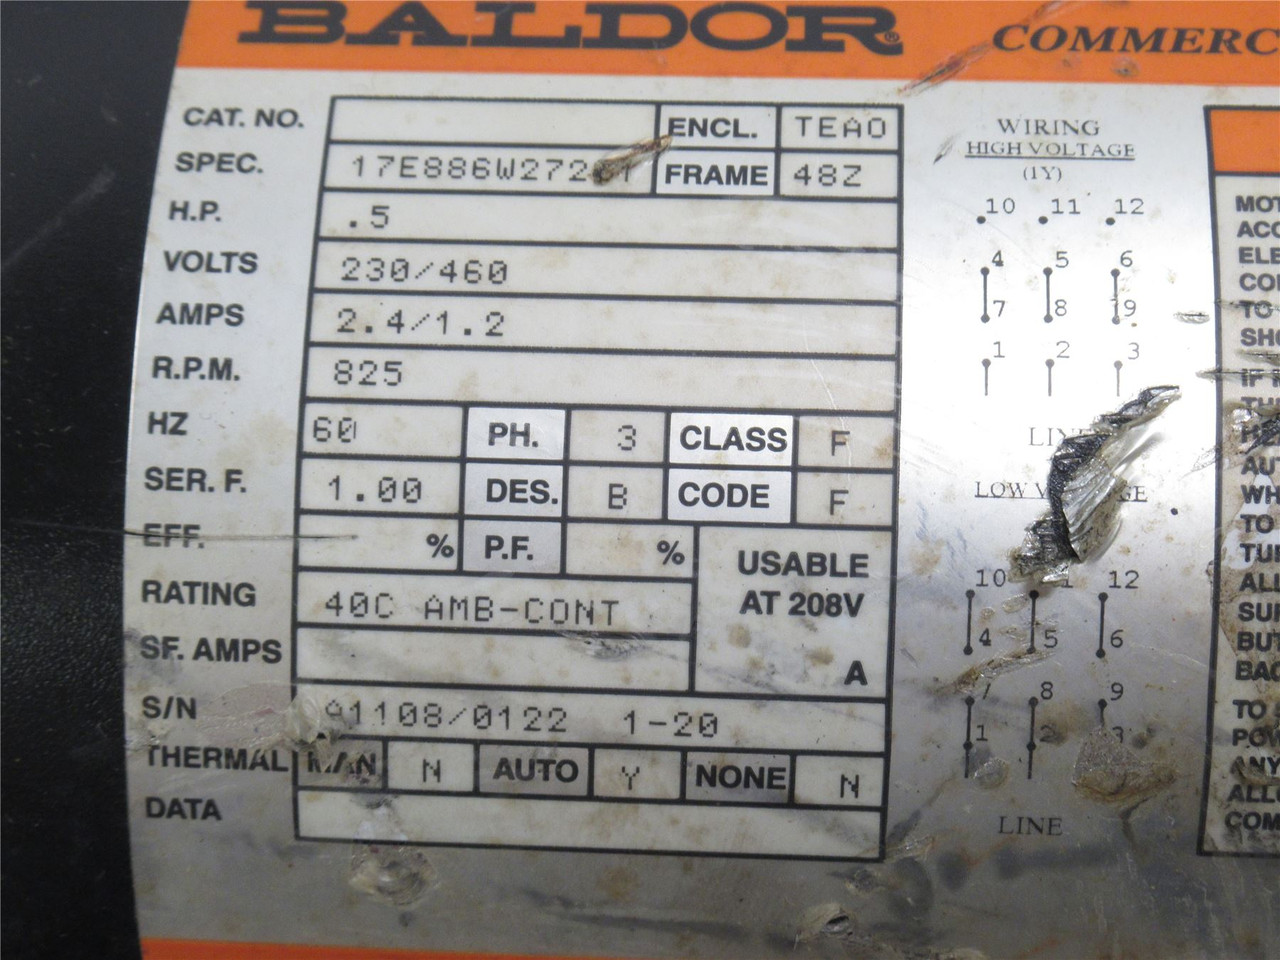 Baldor 17E886W27261; AC Motor; 1/2HP; 230/460V; 825RPM; 3Ph